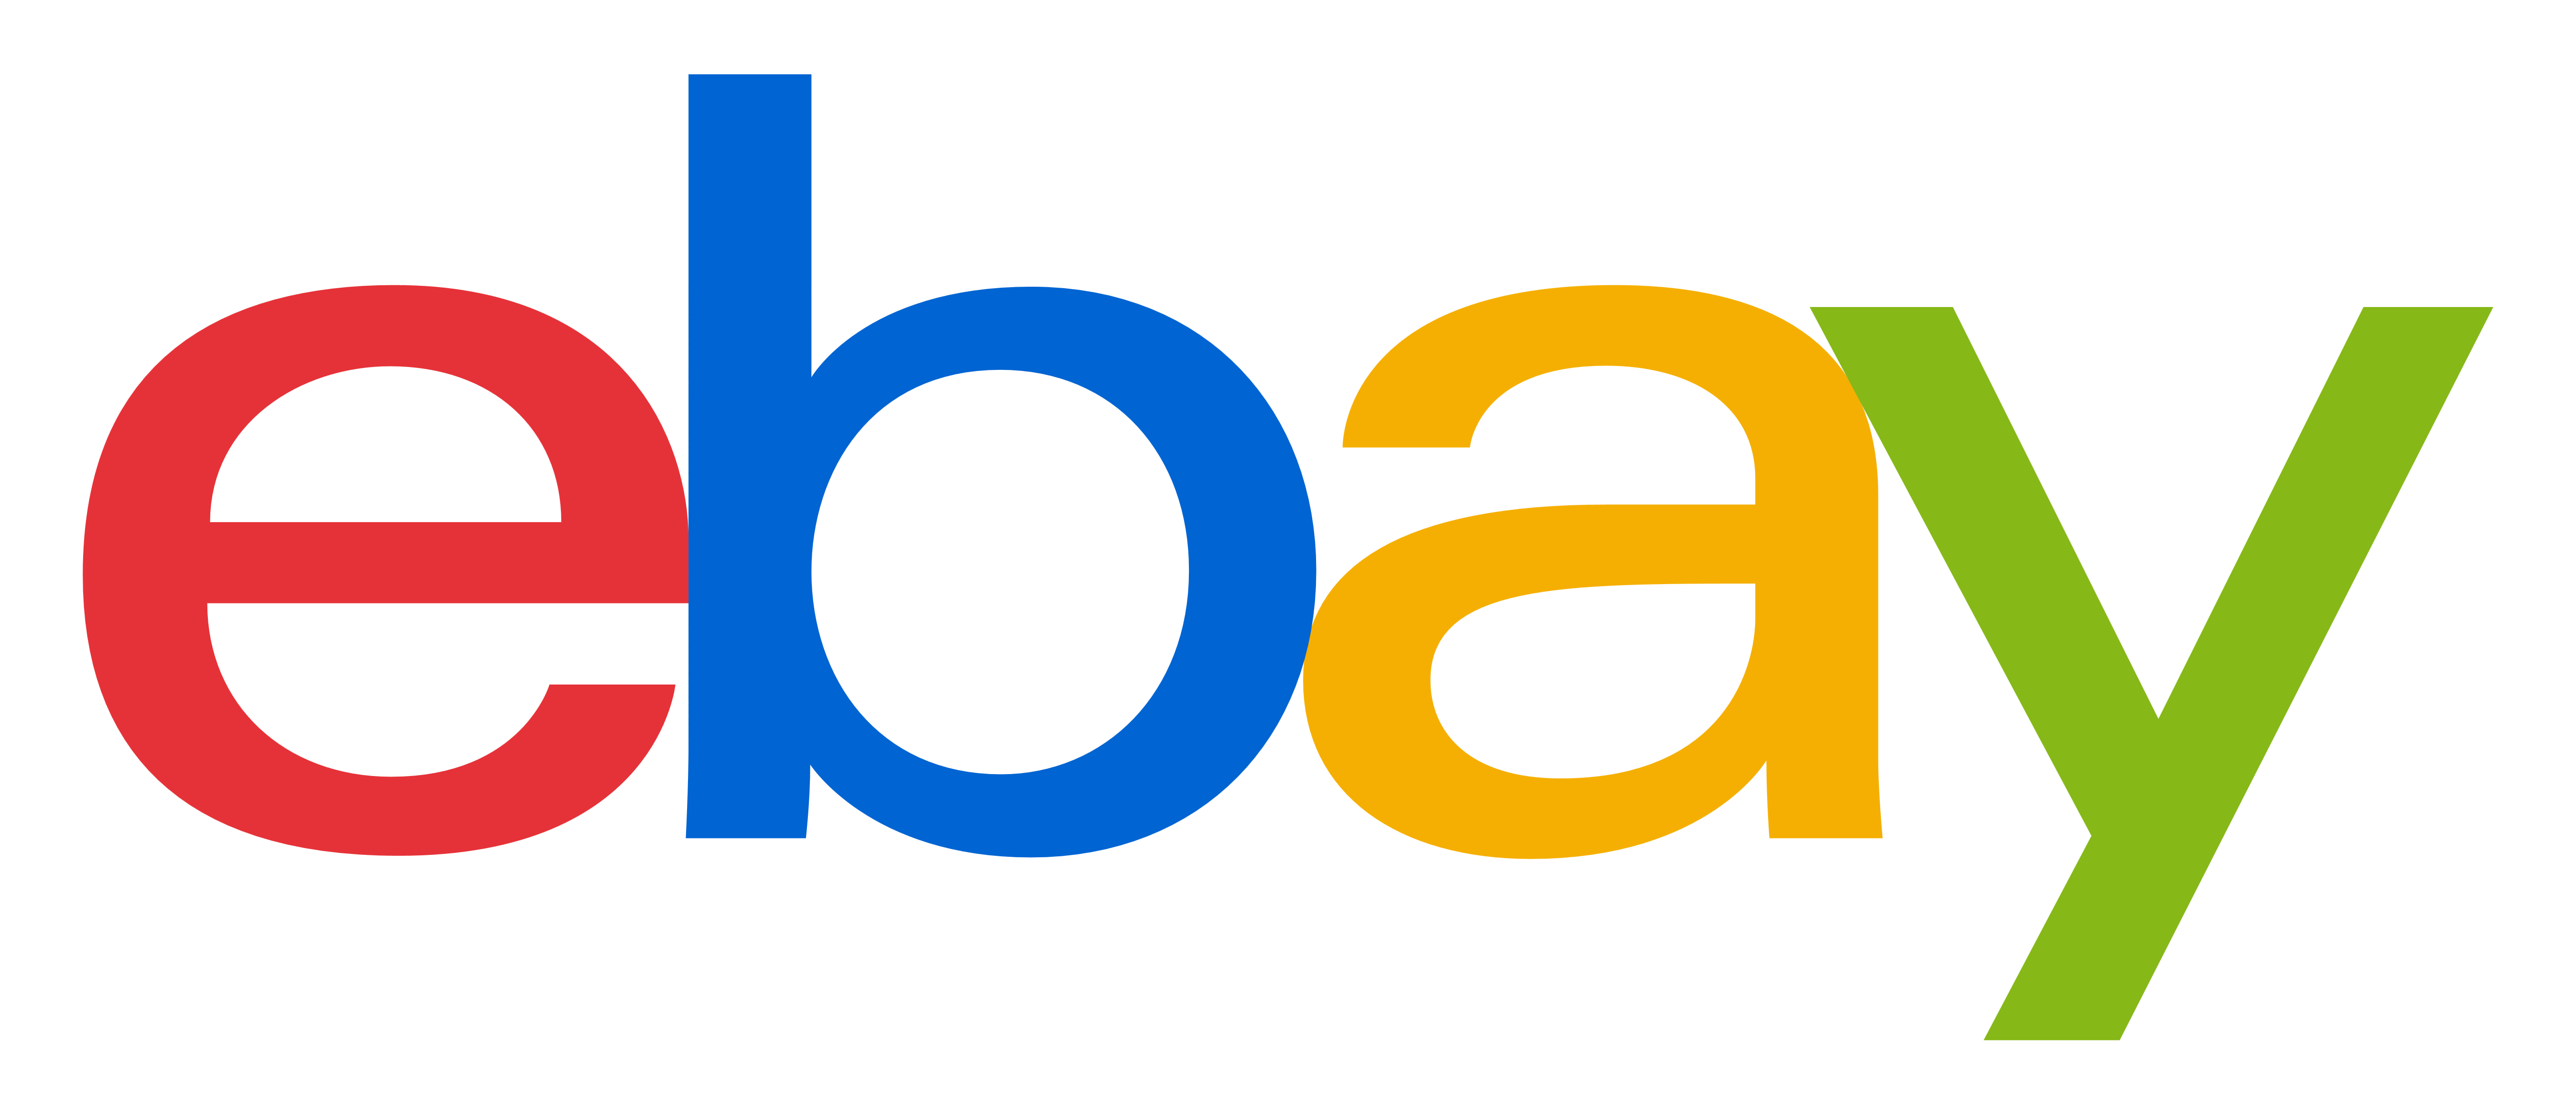 Imagens transparentes do logotipo do eBay